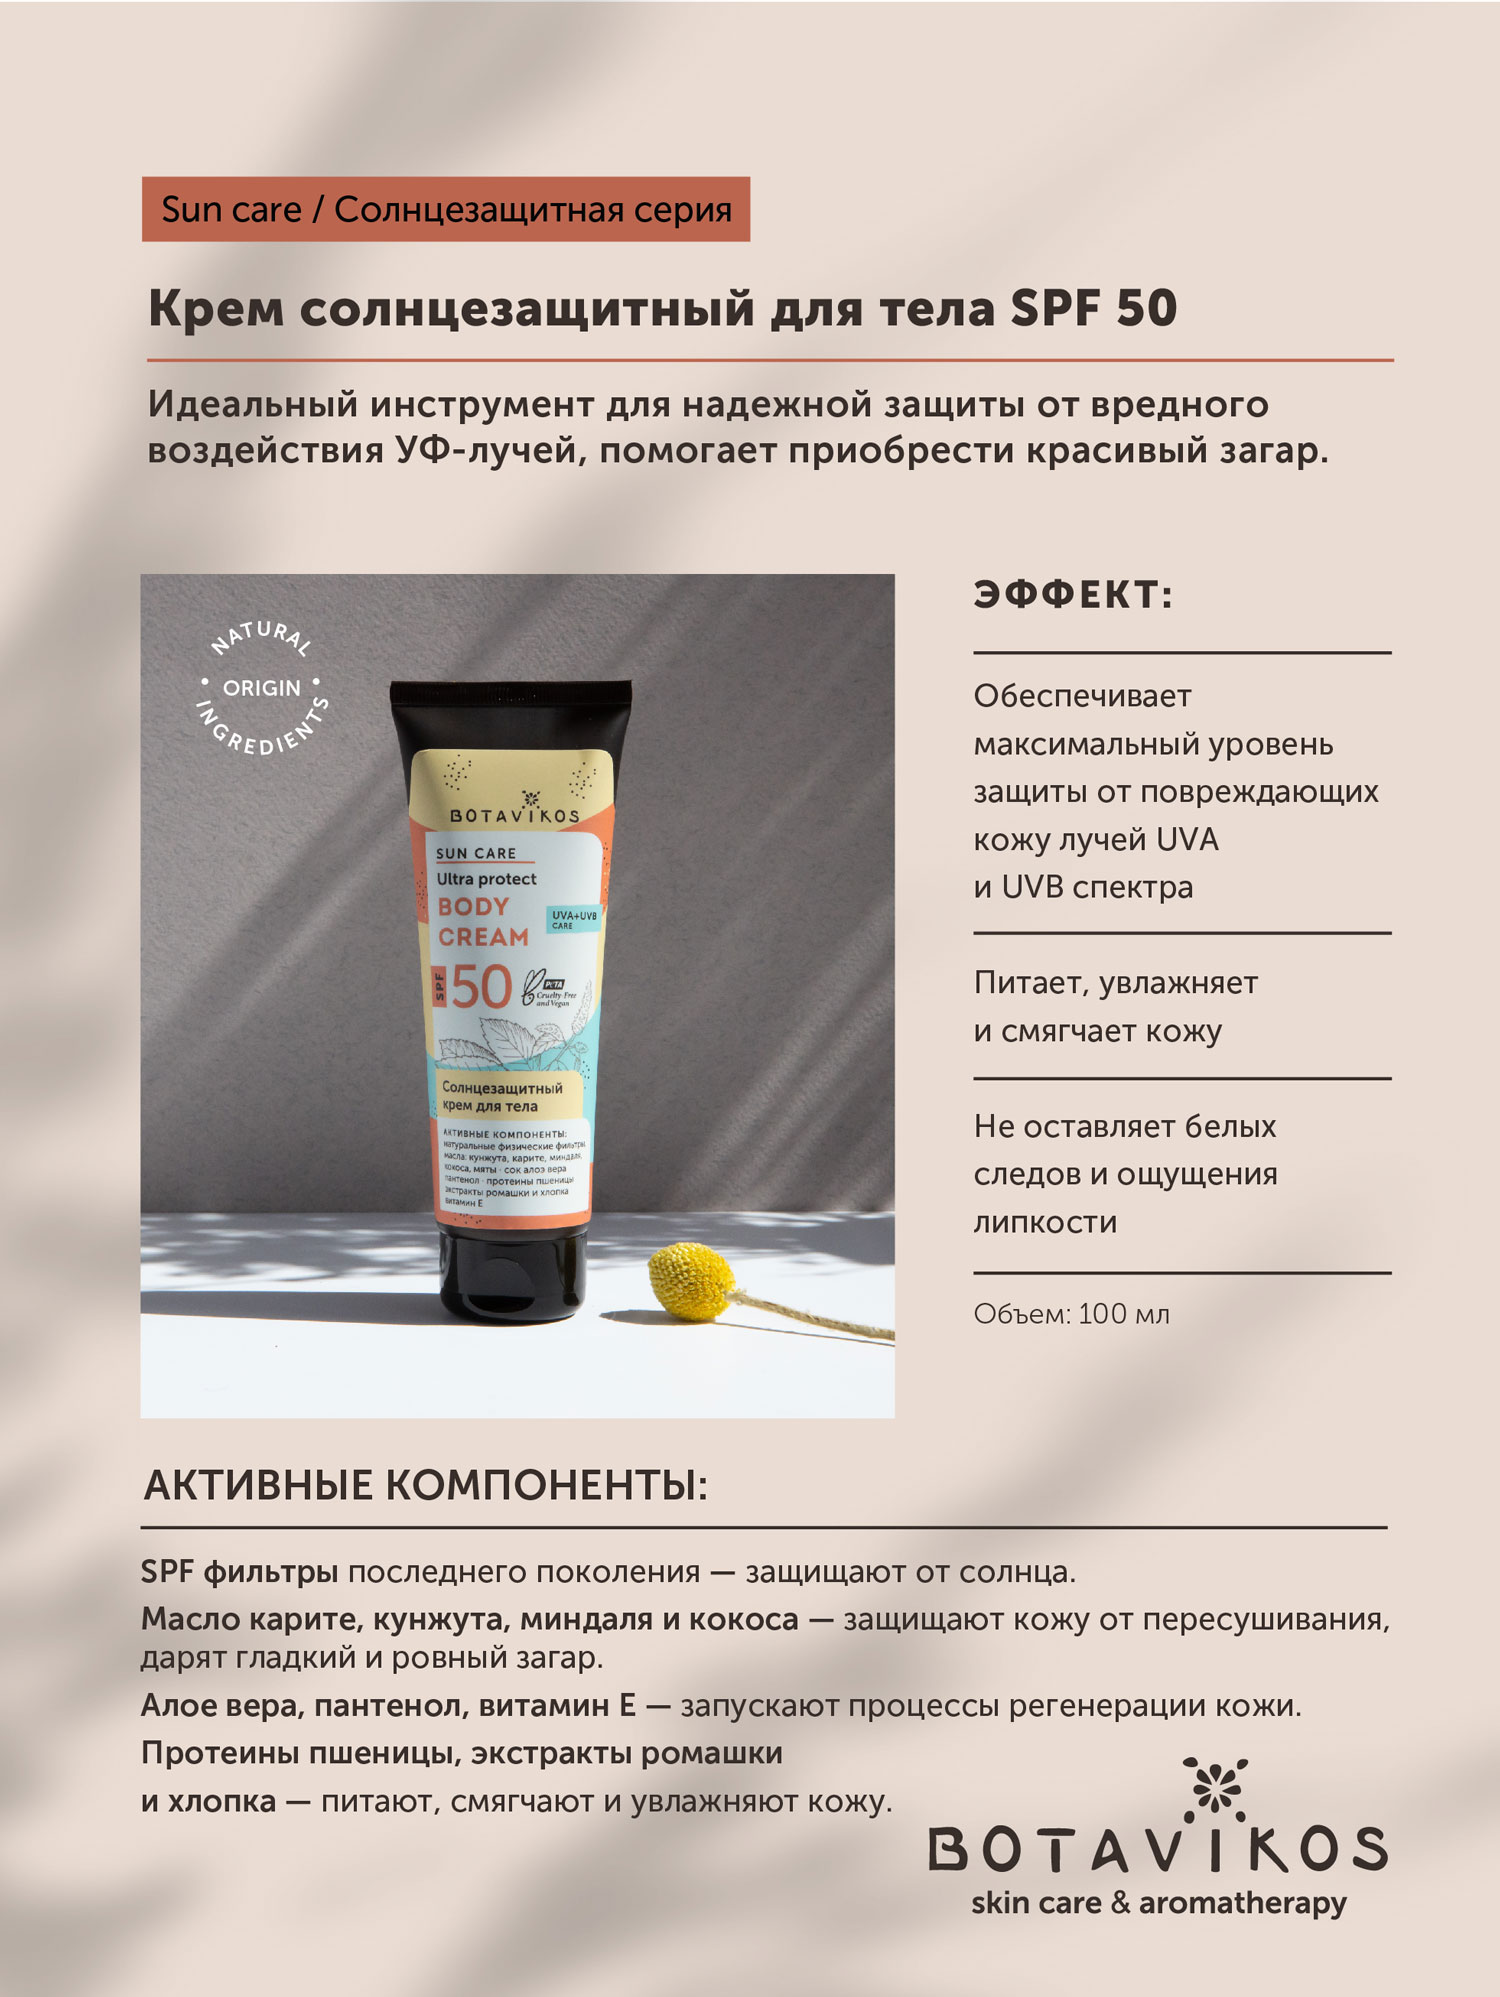 Крем для тела солнцезащитный Botavikos SPF50 (100мл) купить в онлайн экомаркете